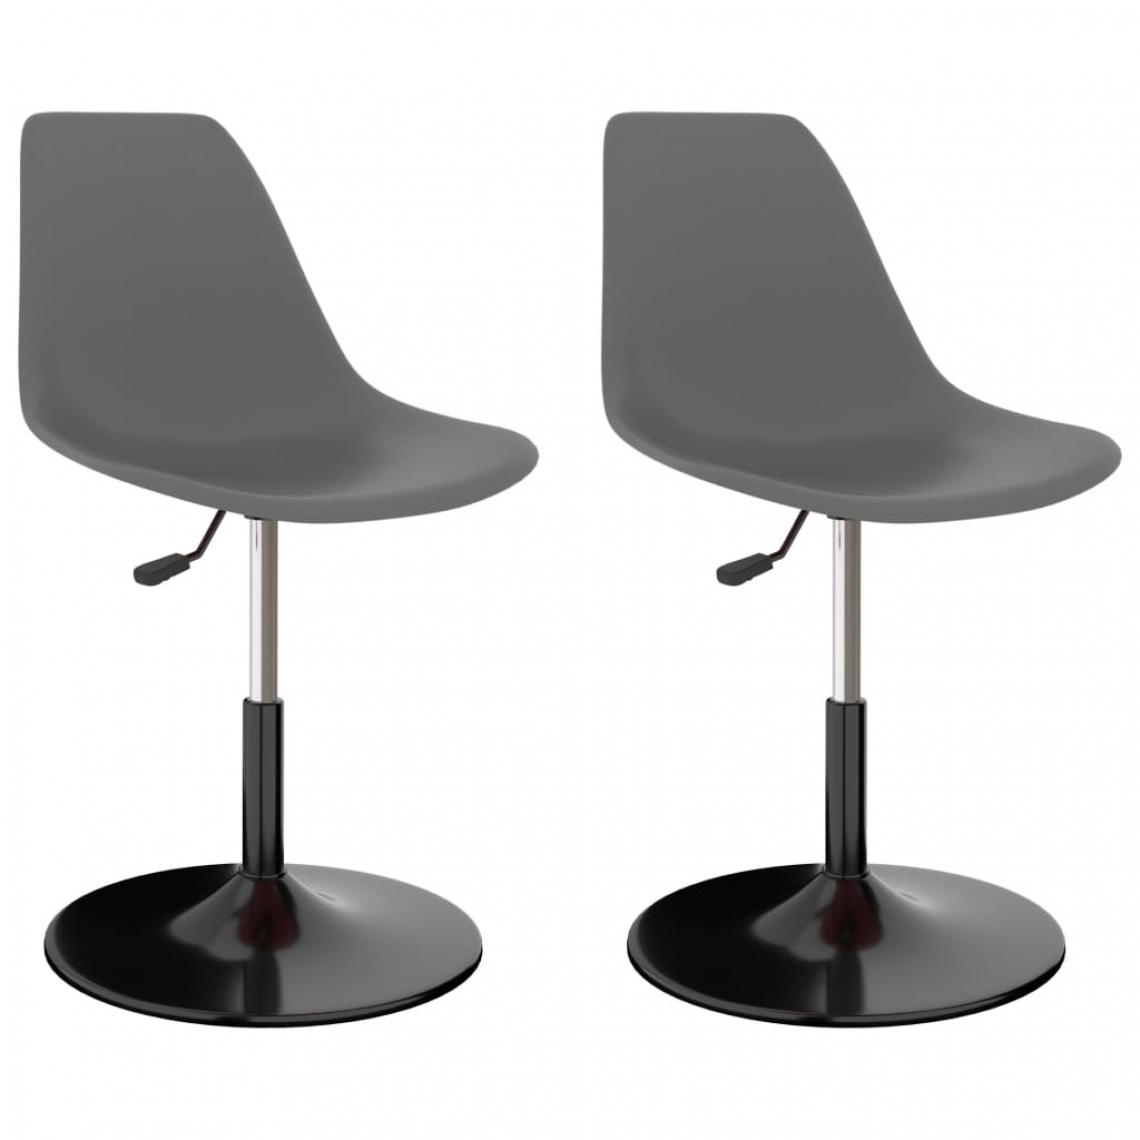 Decoshop26 - Lot de 2 chaises de salle à manger cuisine pivotantes design moderne gris clair PP CDS020911 - Chaises